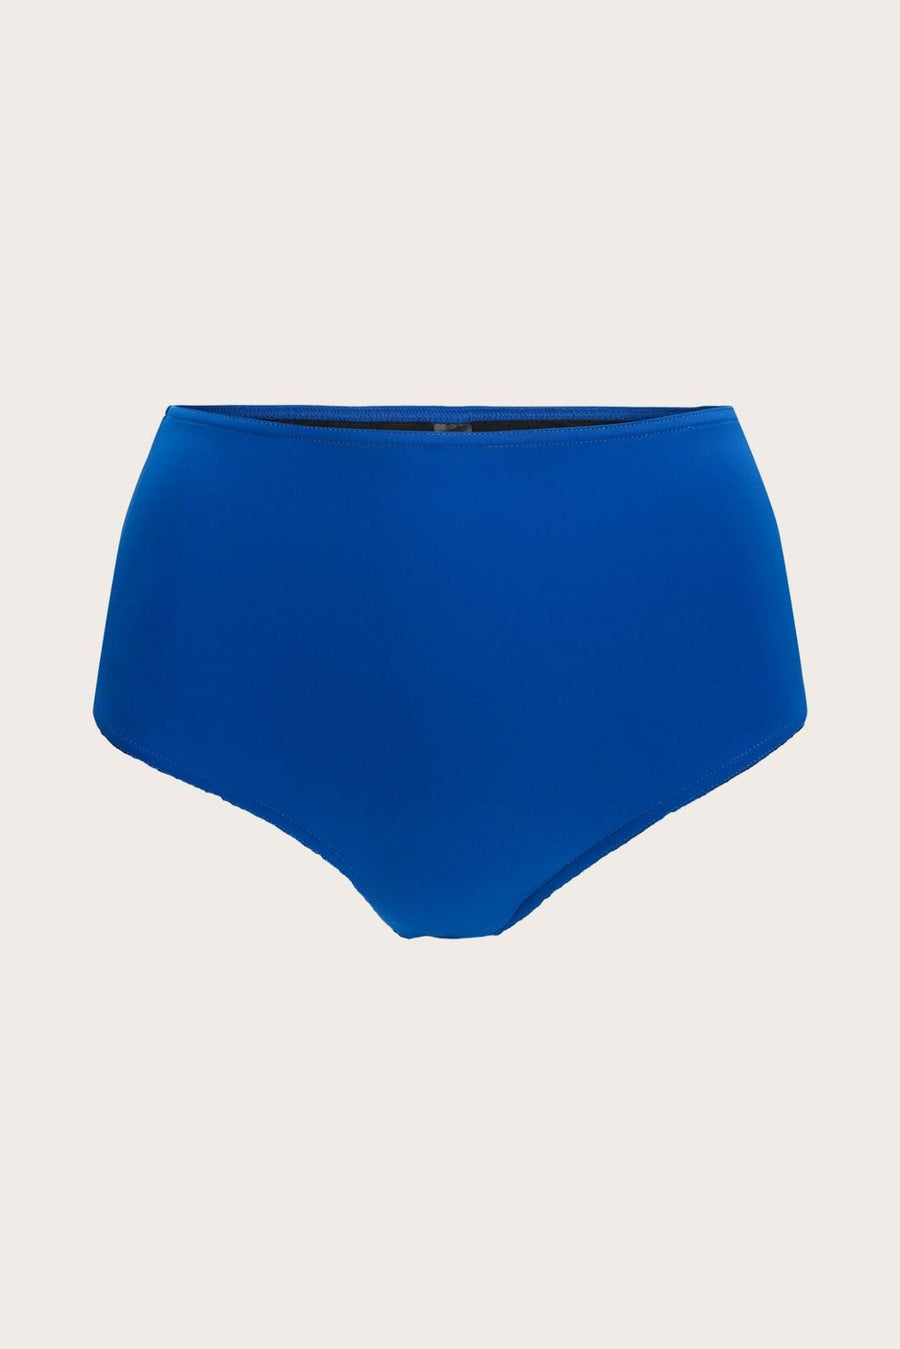 VendelaWear Truse Bikini truse - Samos -  Ibiza Blue